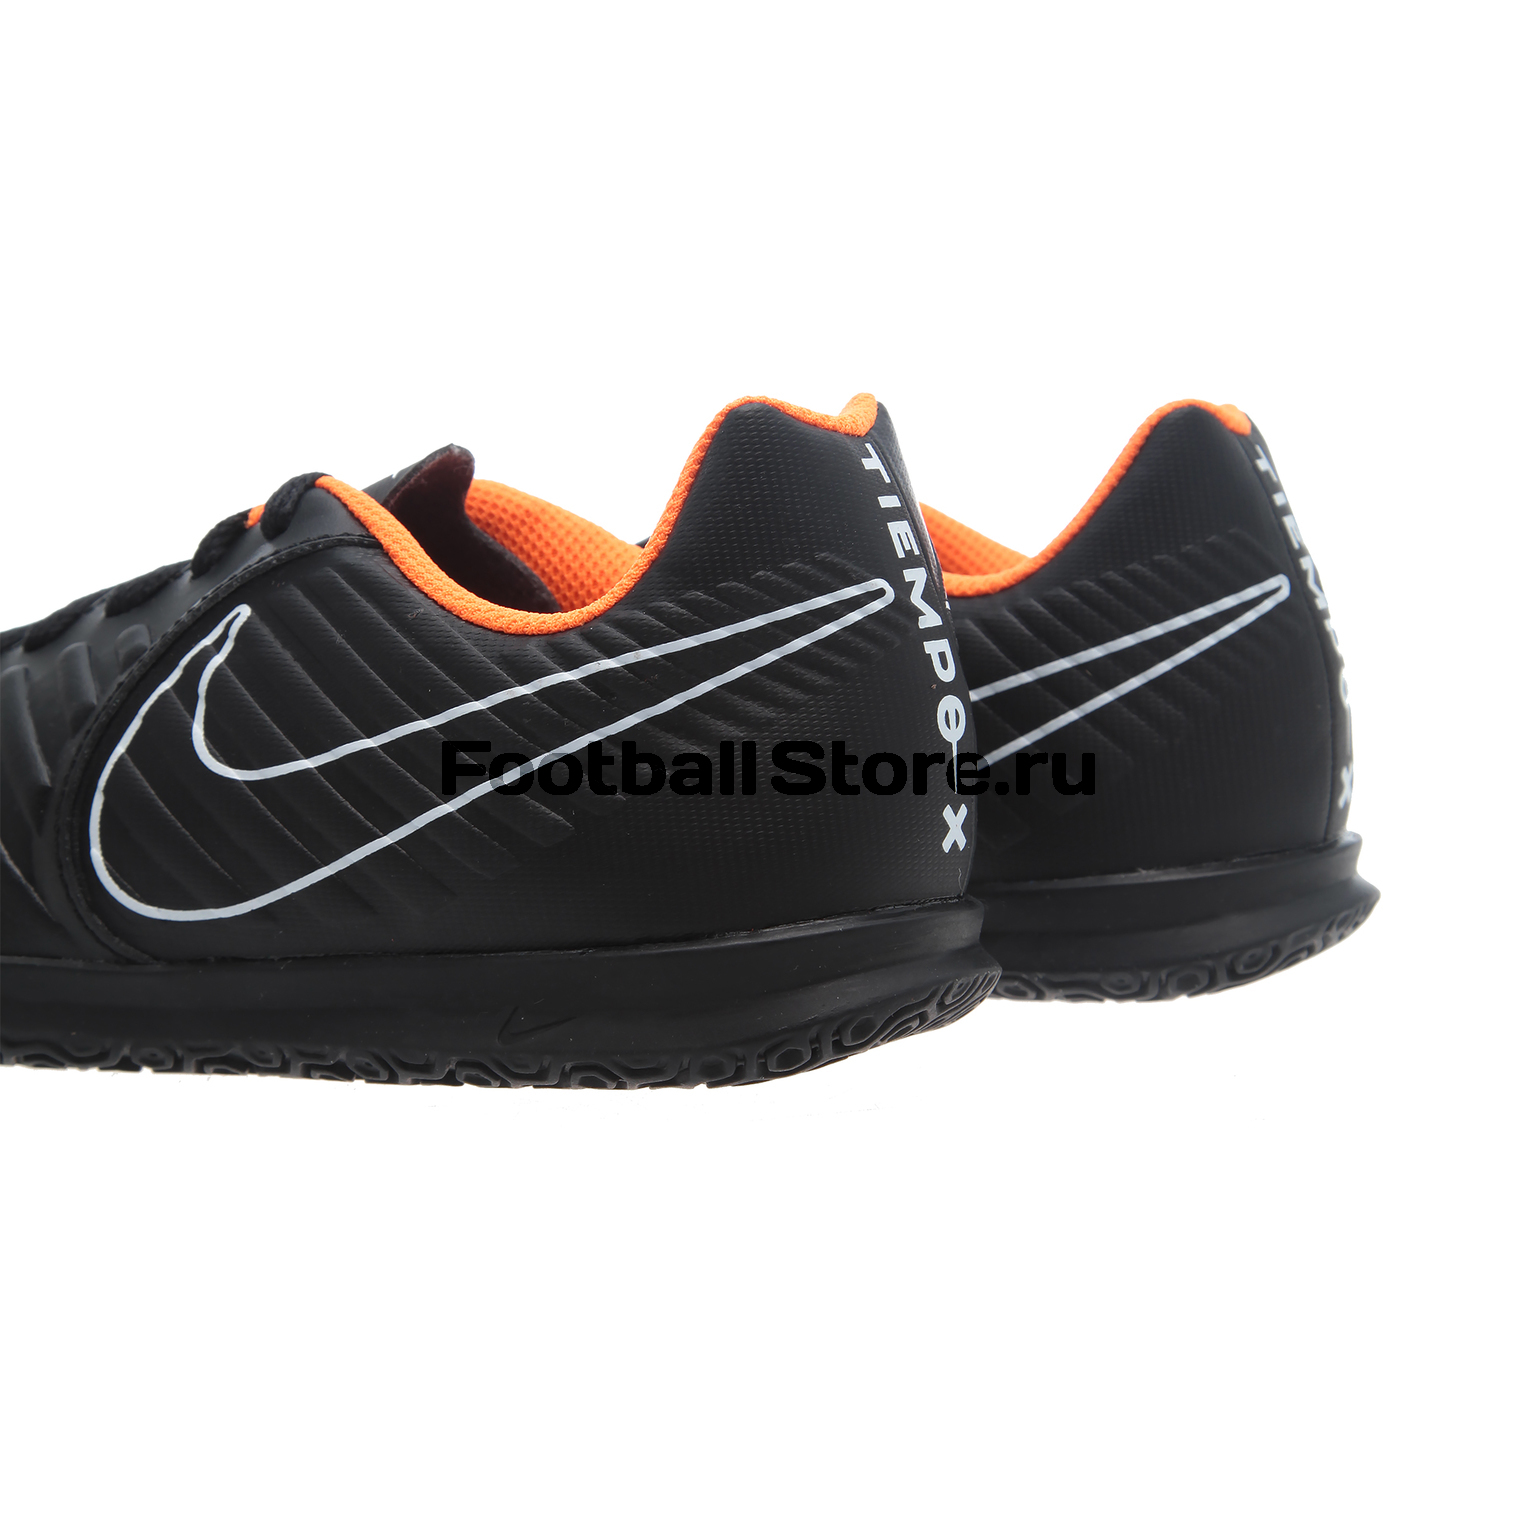 Футзалки детские Nike LegendX 7 Club IC AH7260-080